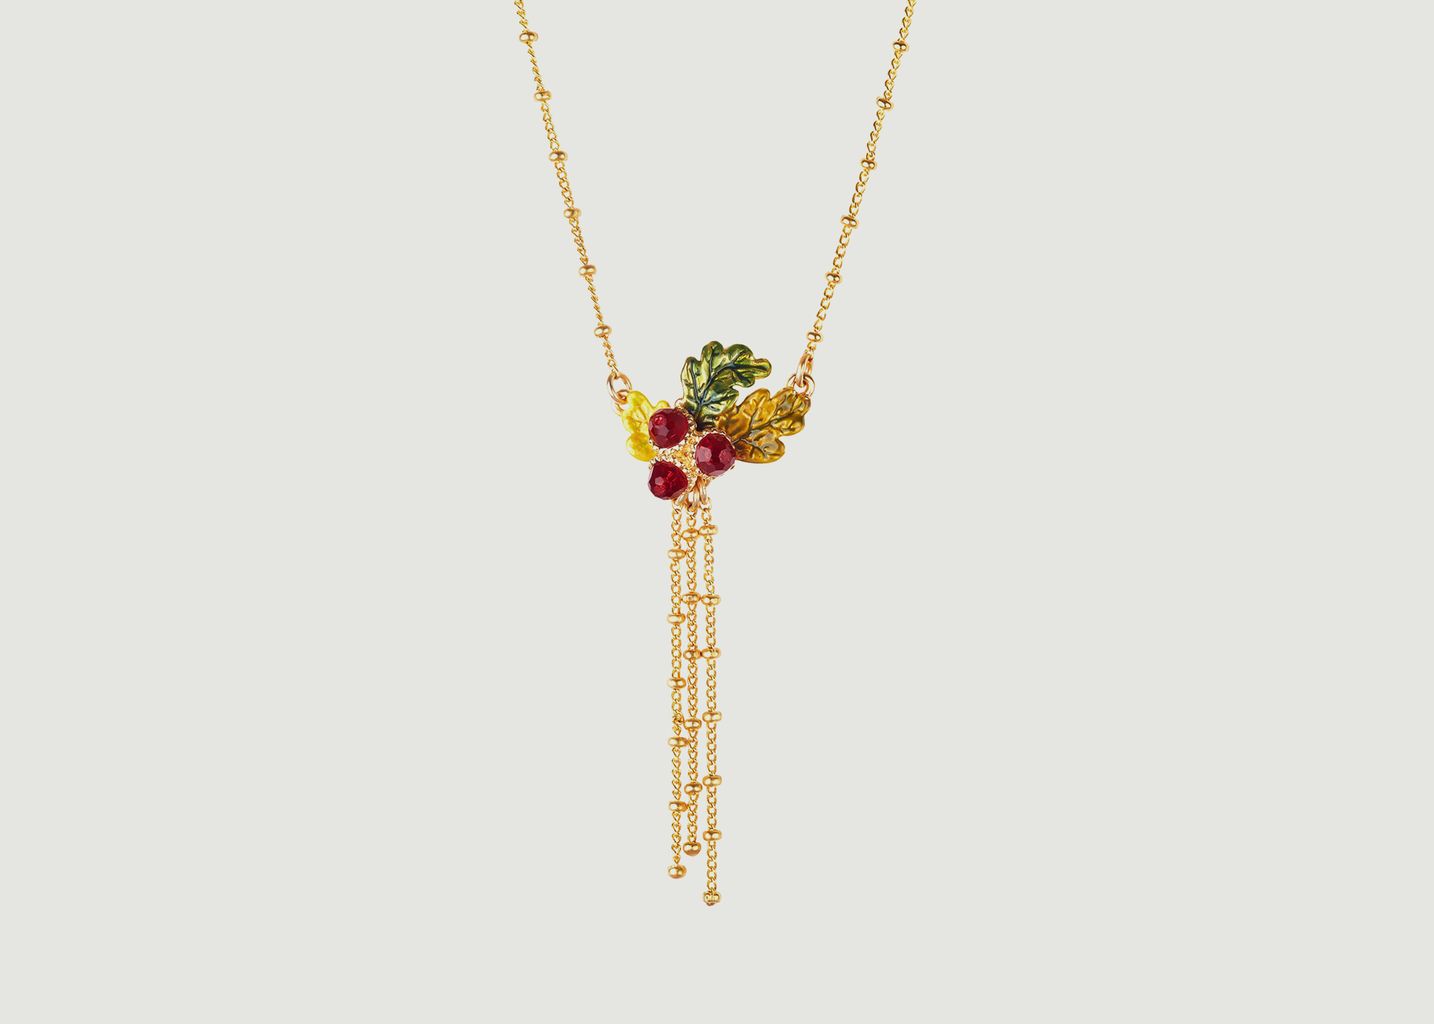 Acorns and oak leaves and chains pendant necklace - Les Néréides